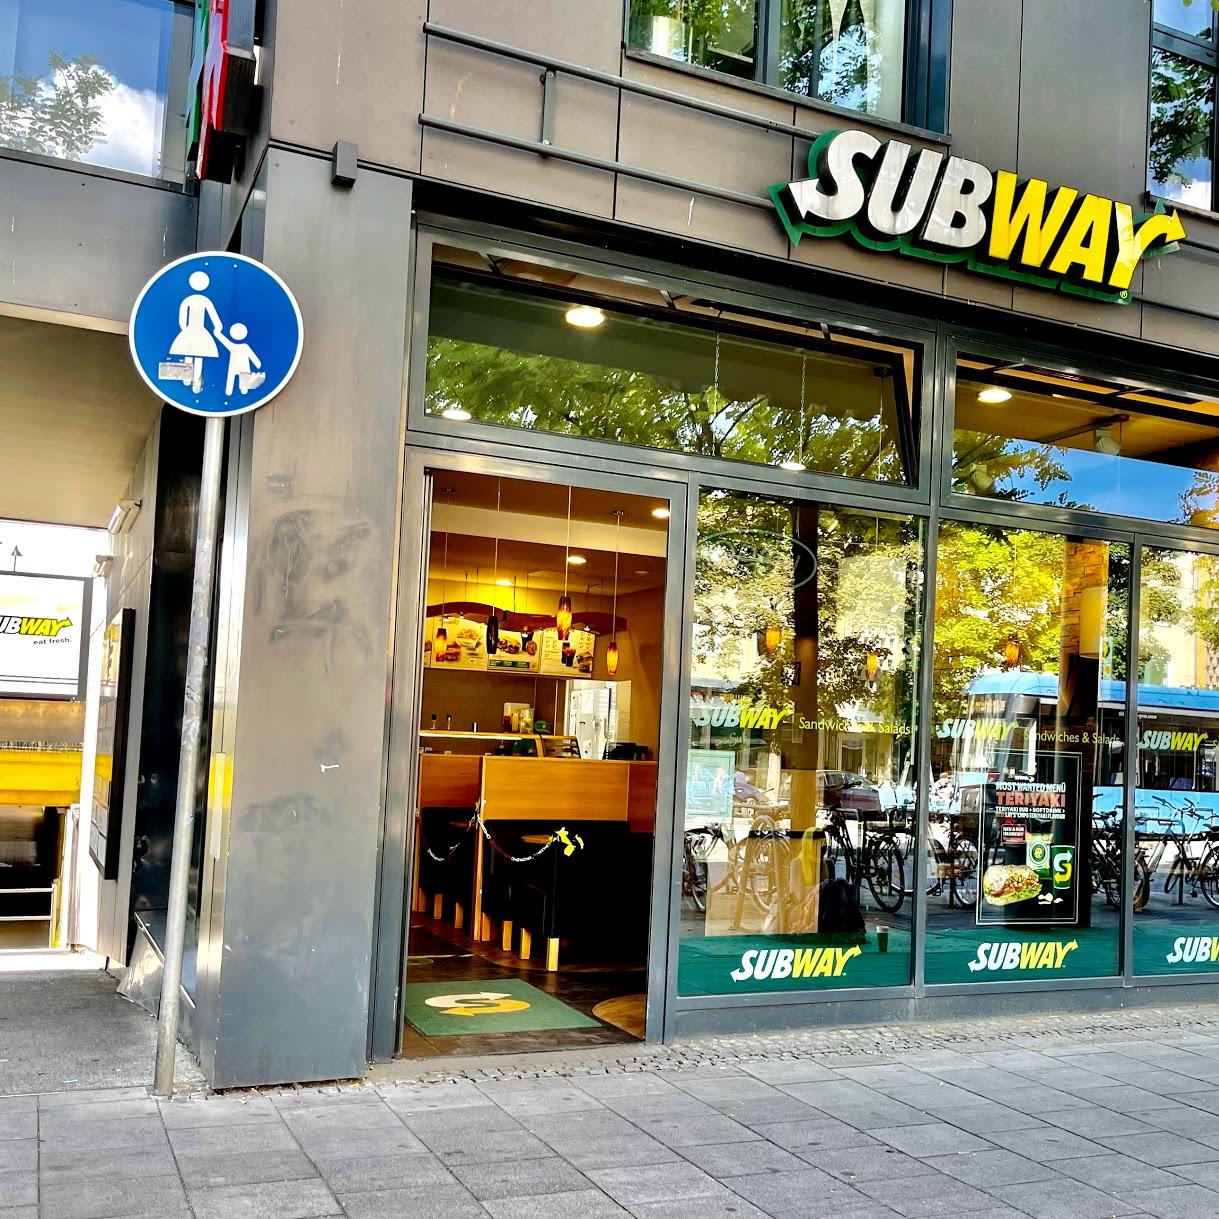 Restaurant "Subway" in  München